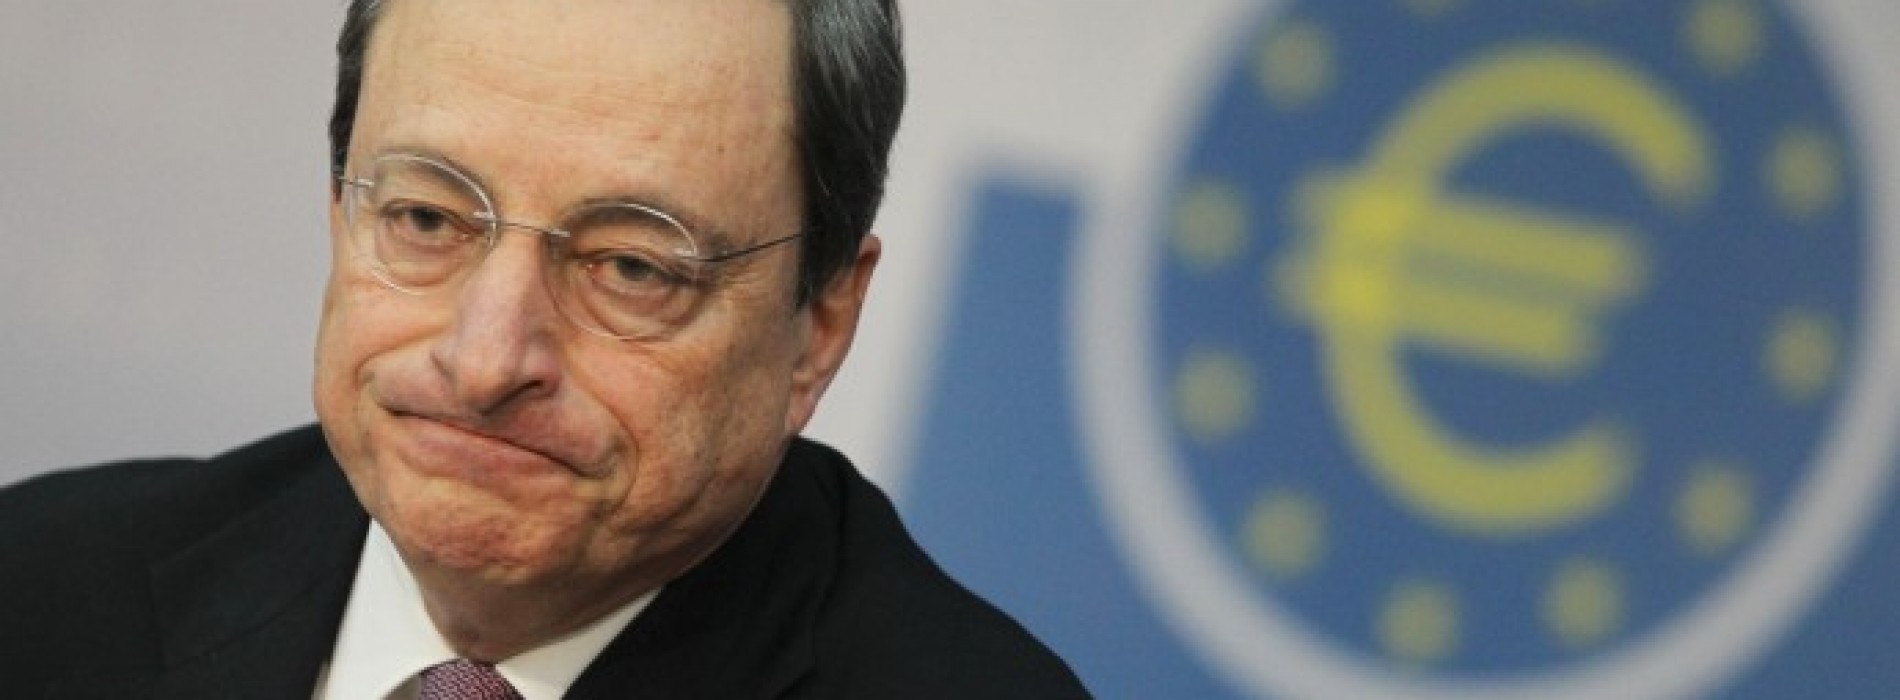 Poranny komentarz giełdowy – rynki czekają co powie Draghi